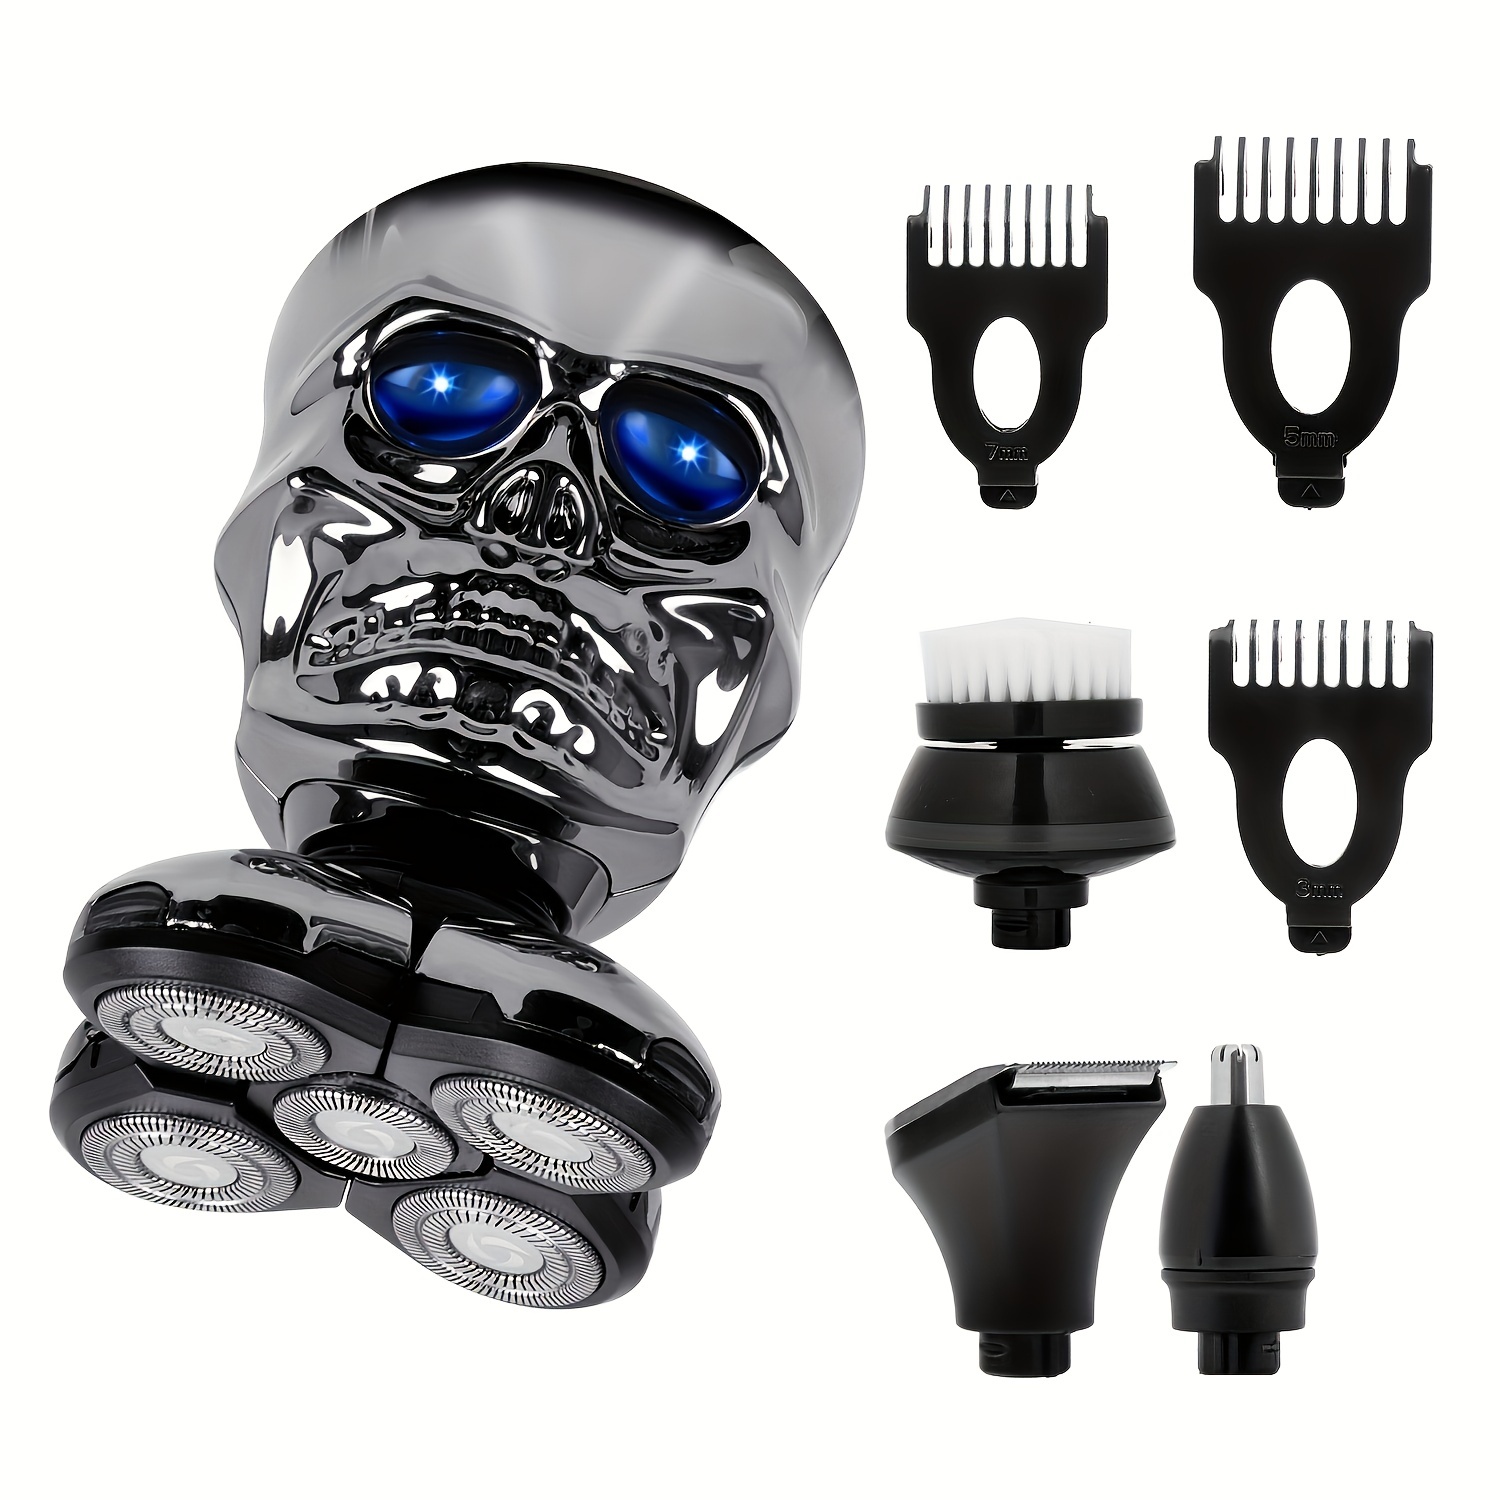 Philips Norelco Multigroom - Kit de aseo de barba para hombre con  recortadora para cabeza, cuerpo, cara, acero inoxidable con estuche de viaje